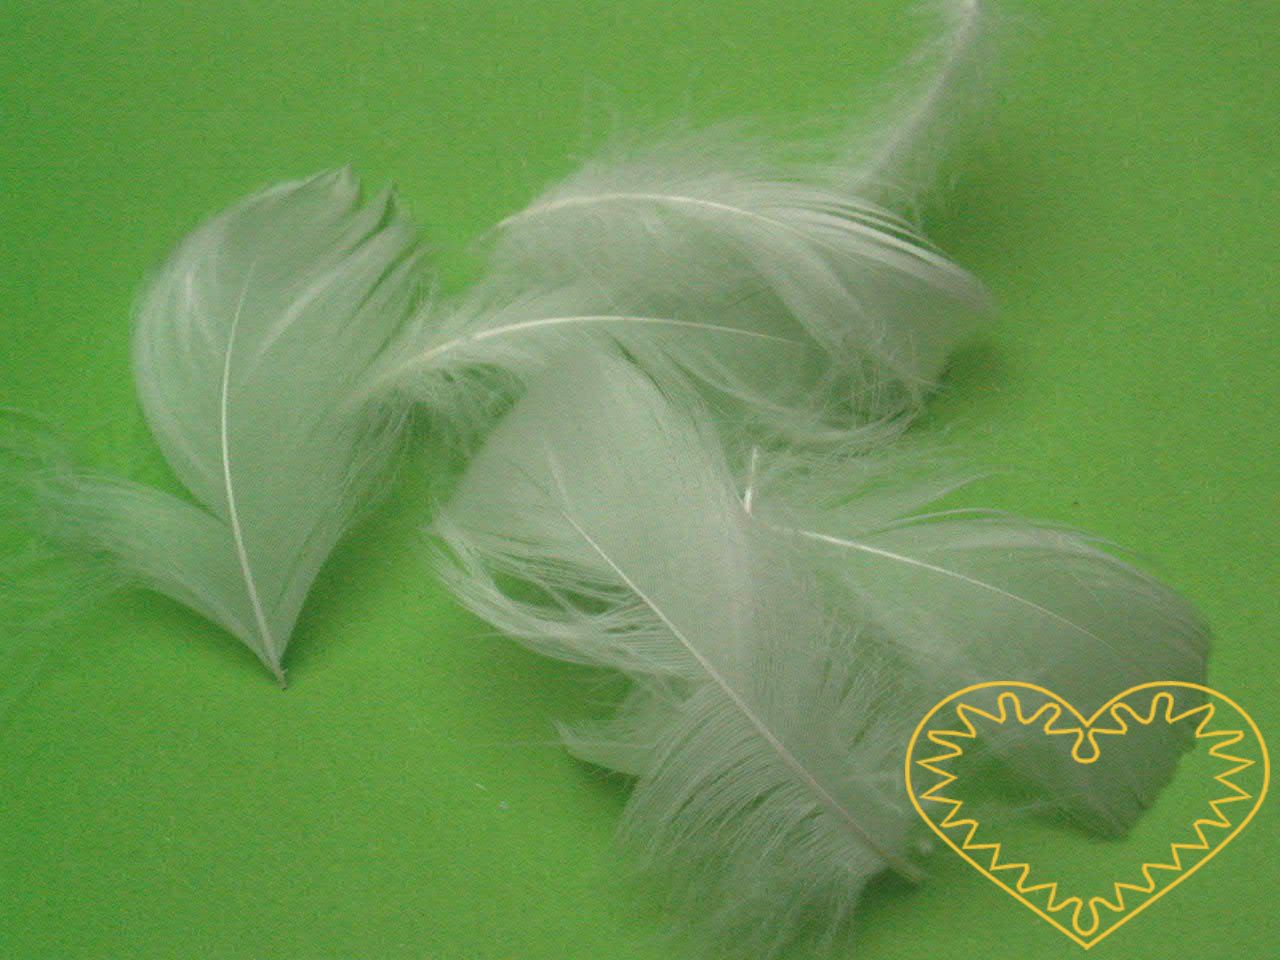 Peříčka bílá - balení 15 g (cca 250 kusů). Peříčka mají široké uplatnění jak při aranžování a výrobě dekorací, tak také např. při tvoření figurek ptáčků, andělíčků apod.